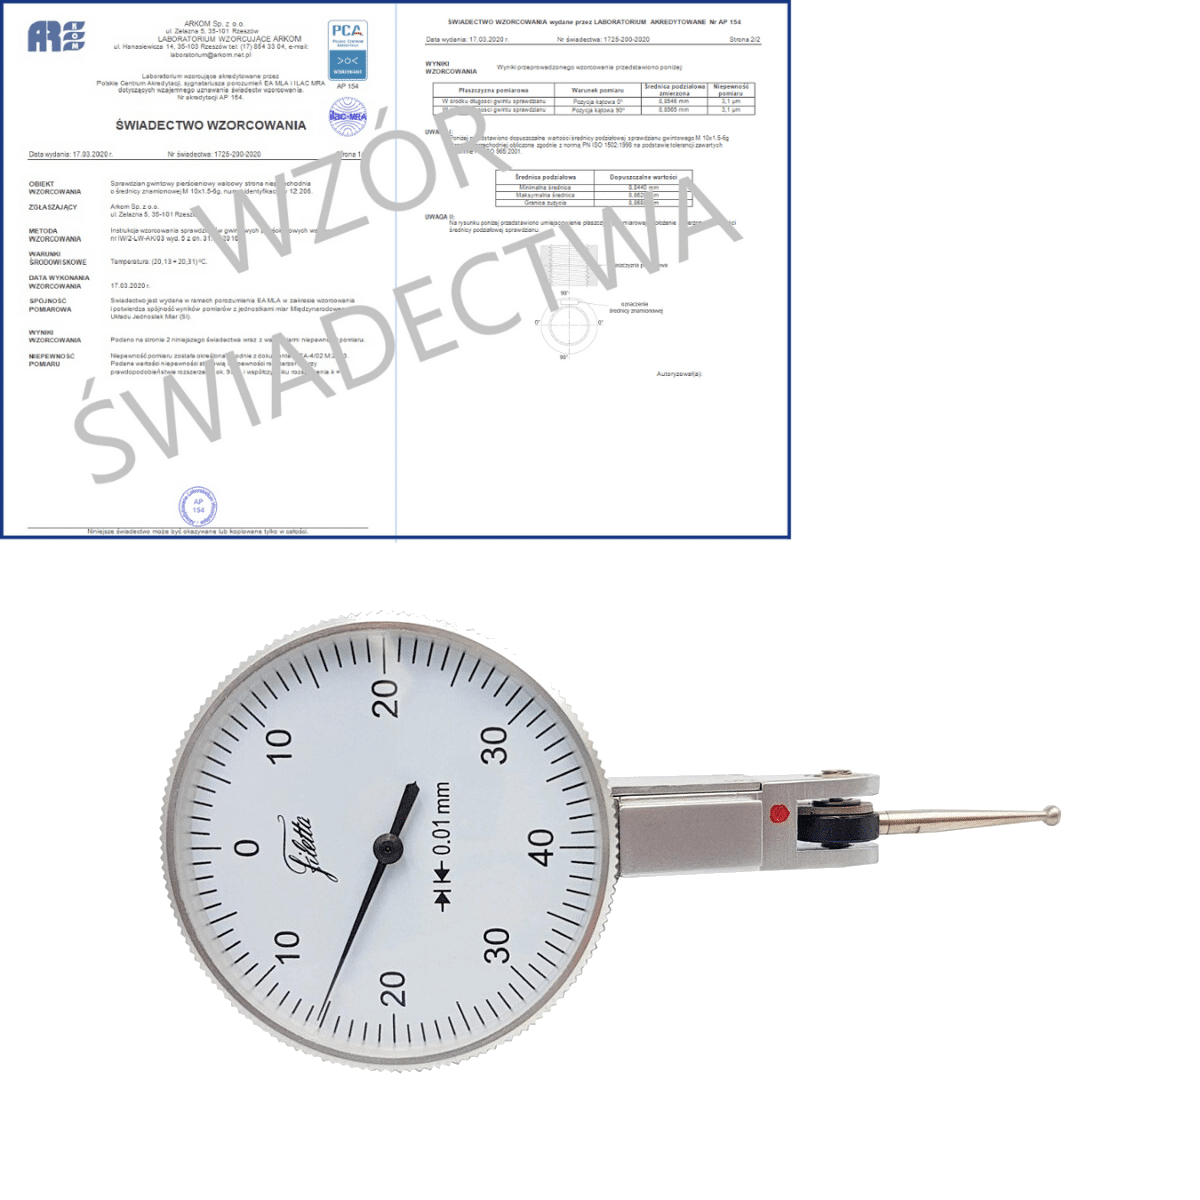 SCHUT czujnik dźwigniowo-zębaty 0-40-0/0.8/0.01mm diatest + świadectwo wzorcowania PCA 907.941 WZORC (Zdjęcie 1)